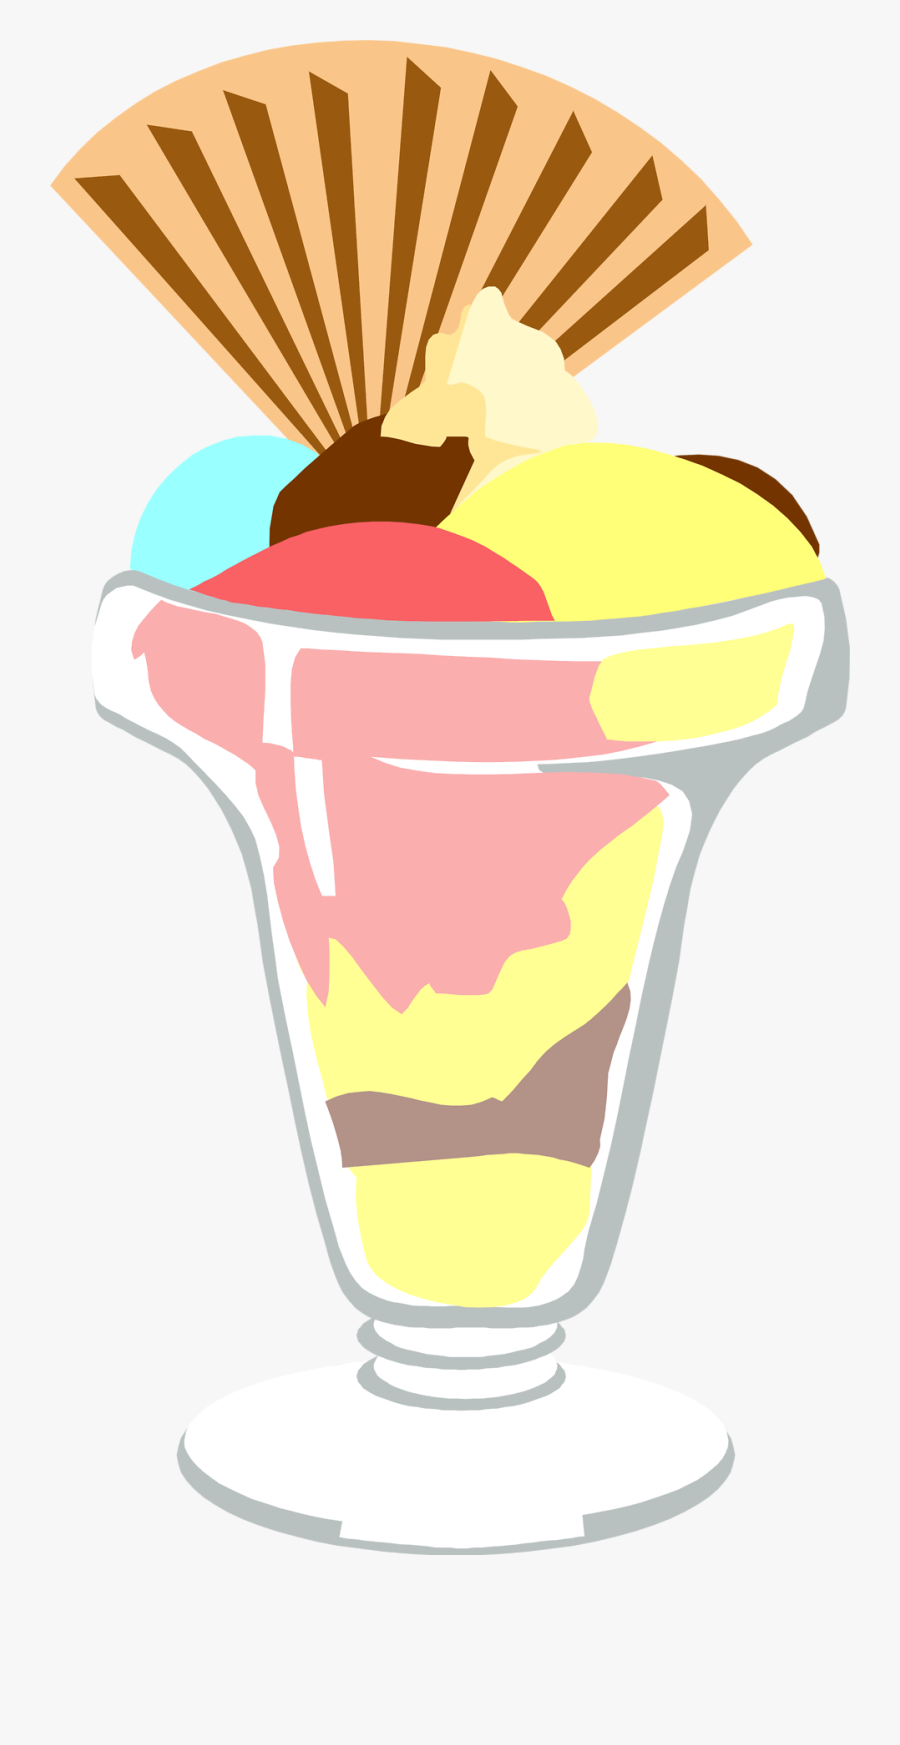 Free Clip Art Ice Cream Sundae Clipart - Ice Cream Sundae Illustration Png, Transparent Clipart